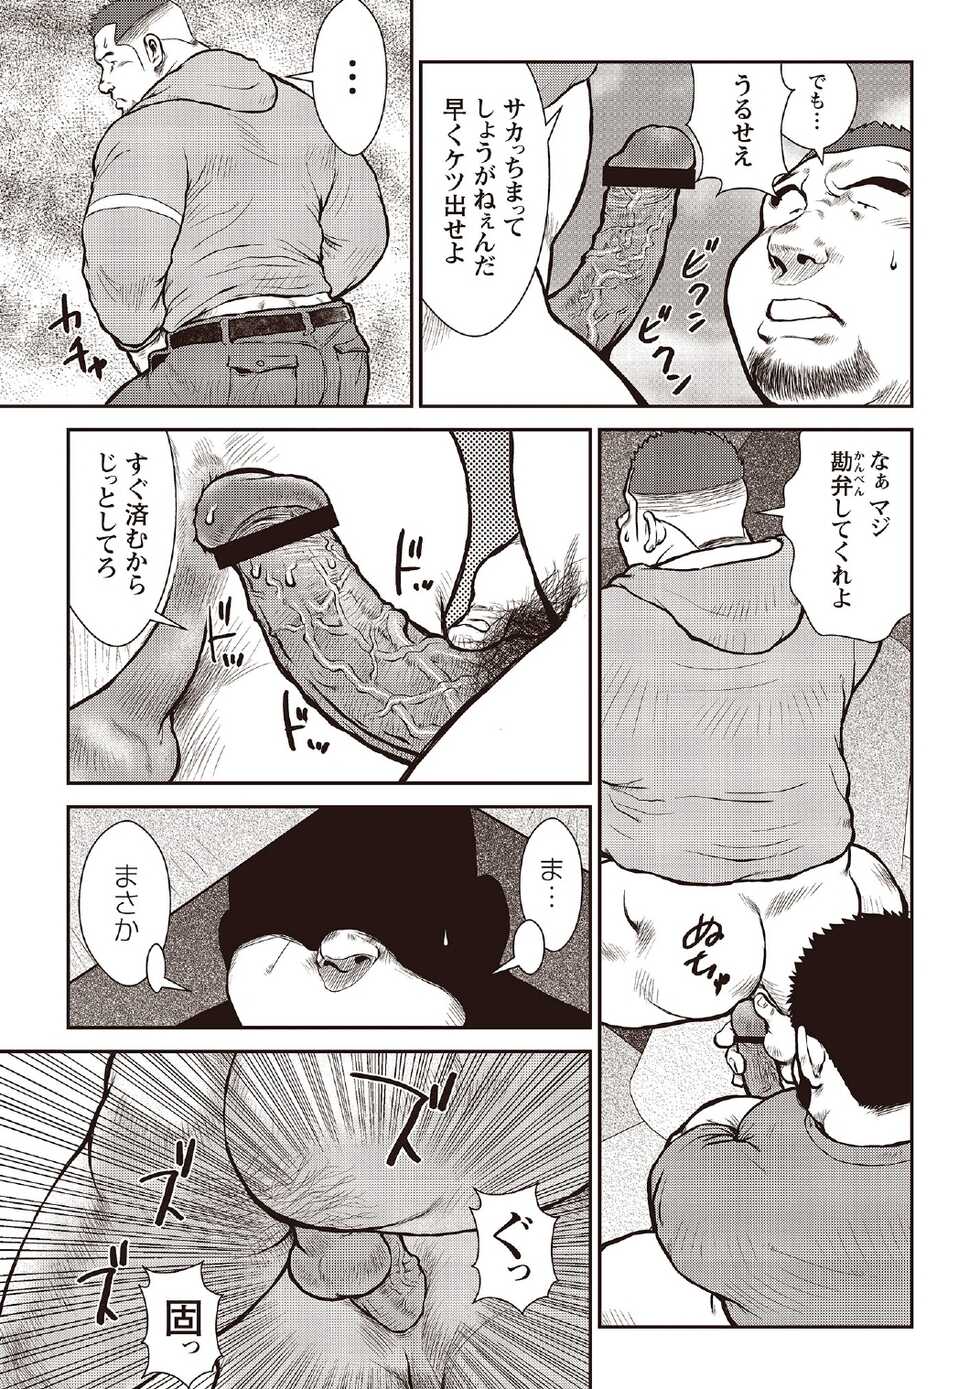 [Ebisubashi Seizou] Ebisubashi Seizou Tanpen Manga Shuu 2 Fuuun! Danshi Ryou [Bunsatsuban] PART 2 Bousou Hantou Taifuu Zensen Ch. 1 + Ch. 2 [Digital] - Page 15